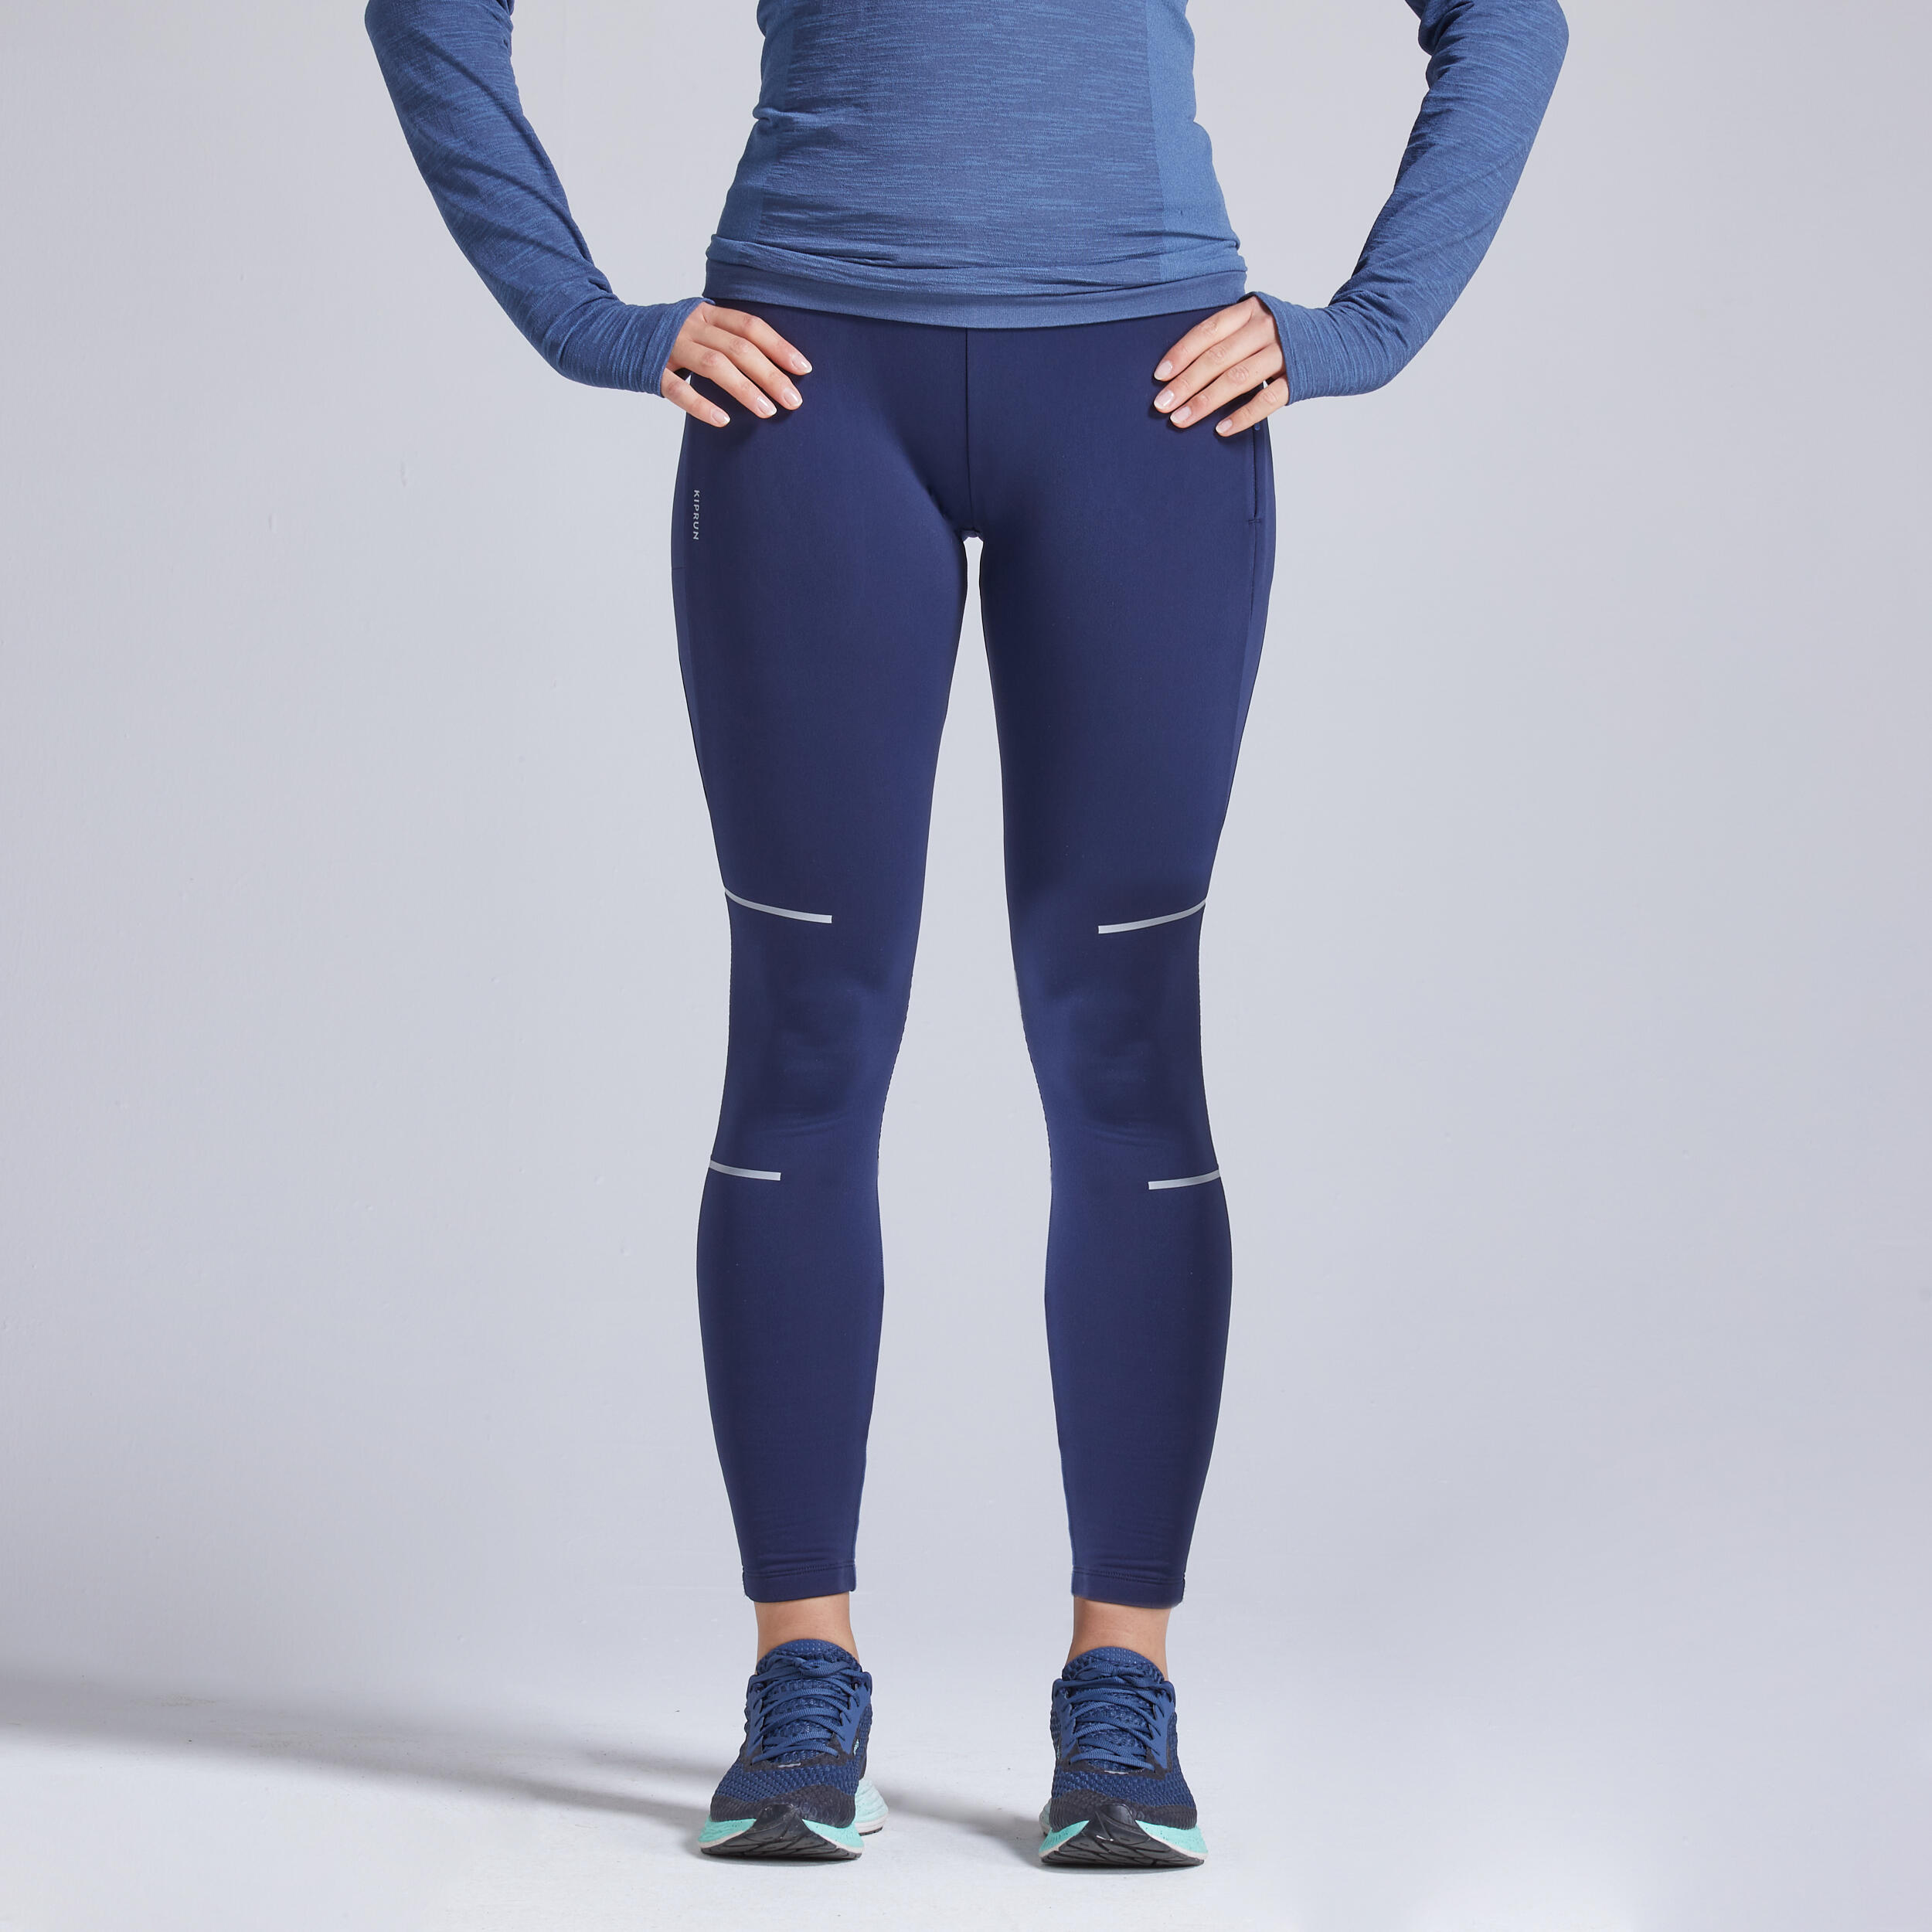 Women's Running Leggings - Warm Blue - [EN] steel blue, Whale grey